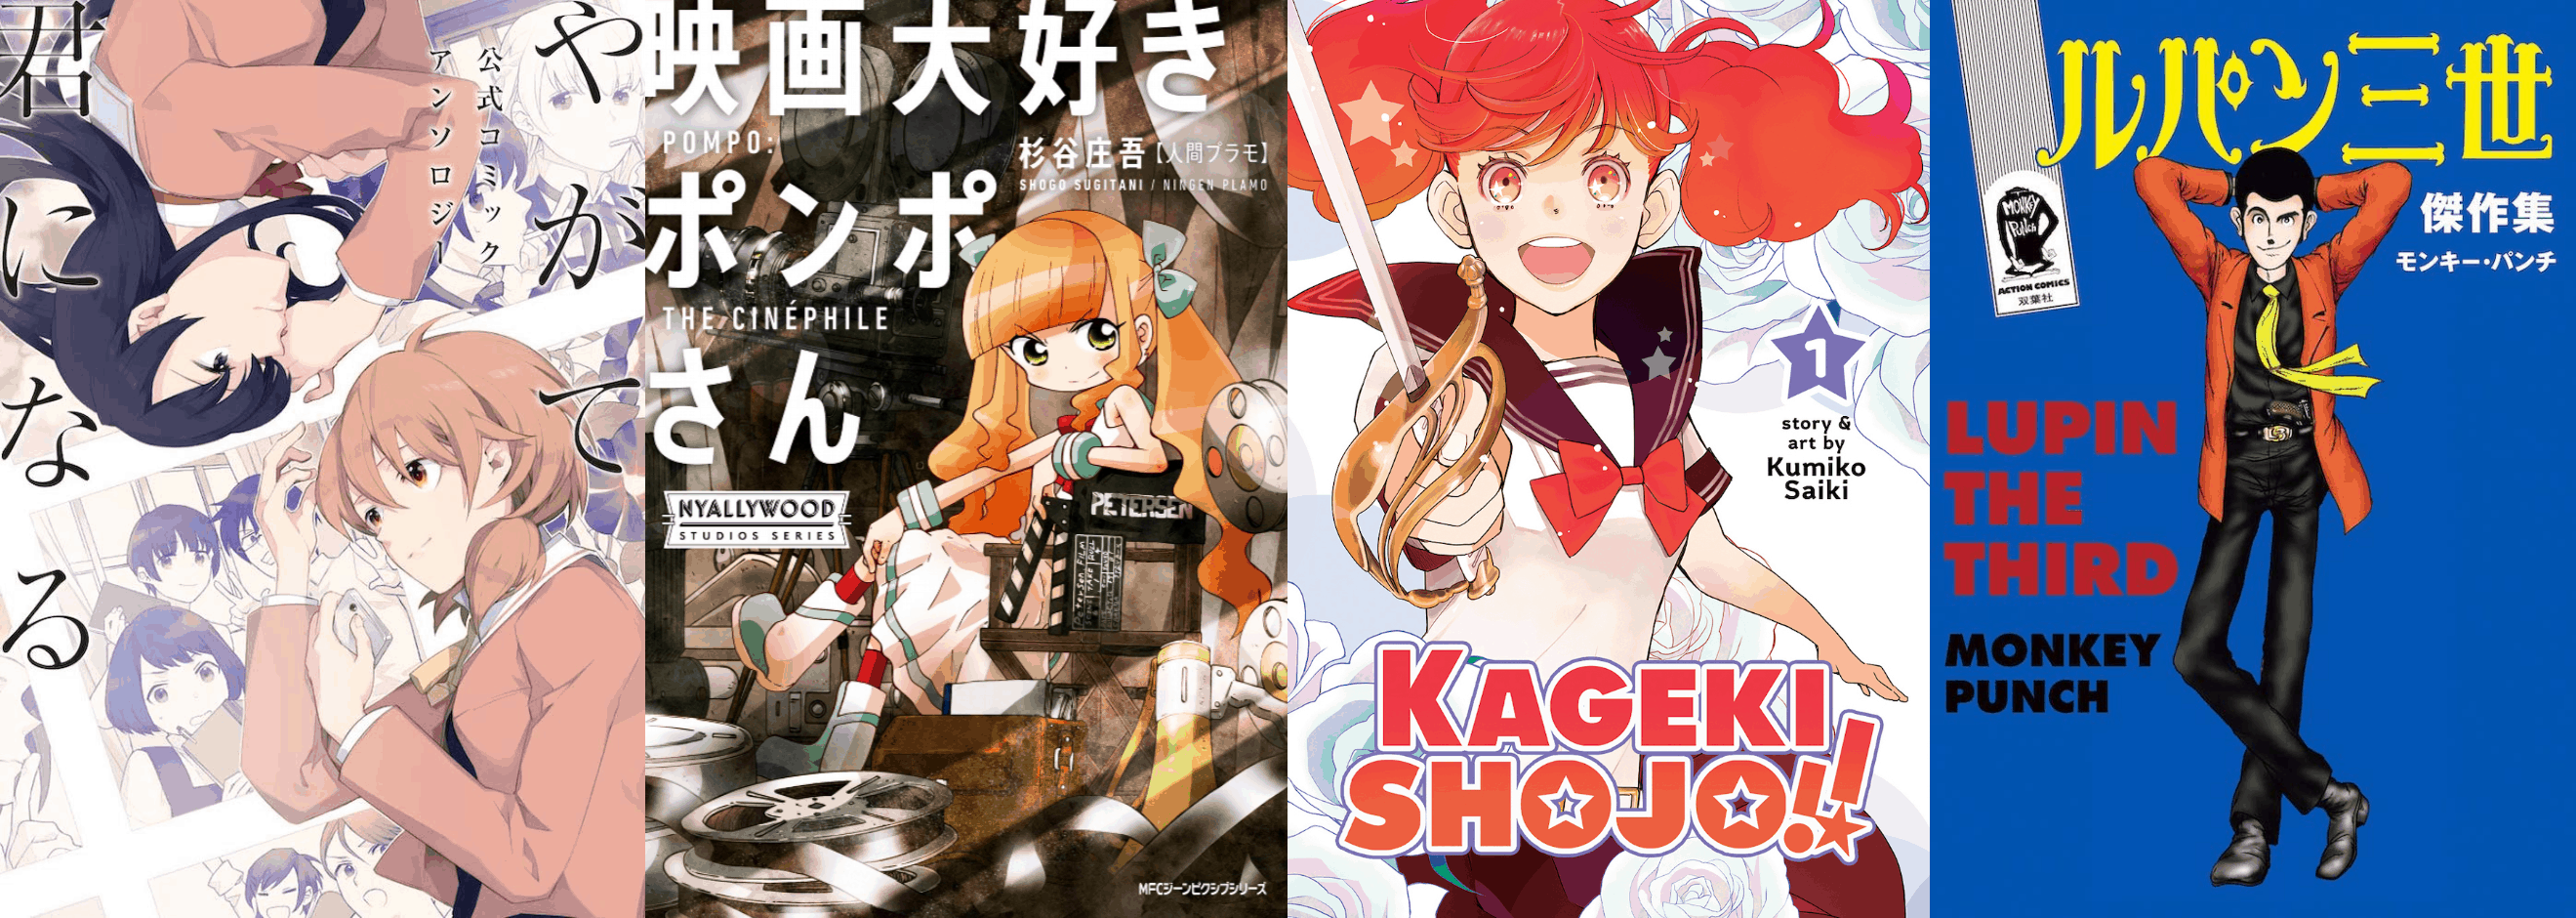 Kageki Shojo!! Vol. 11 by Kumiko Saiki: 9781685795146 |  : Books